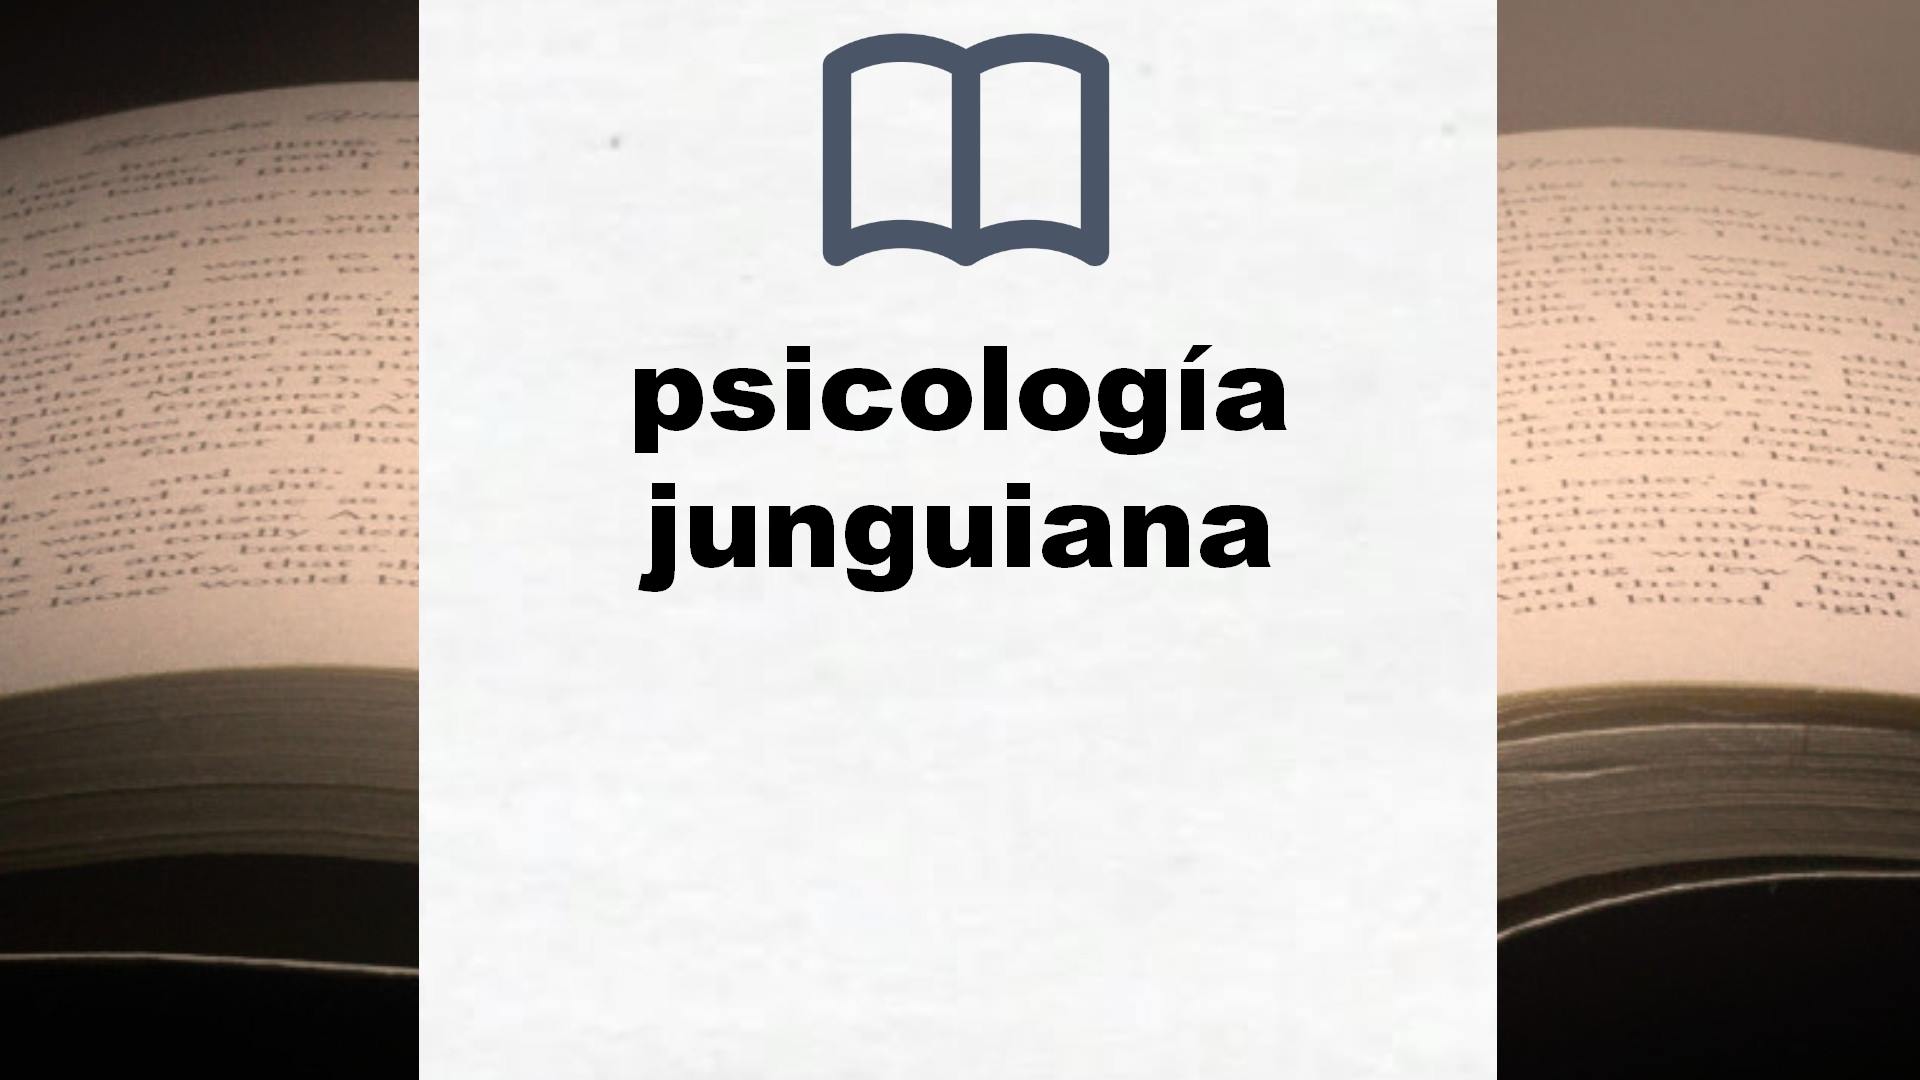 Libros sobre psicología junguiana